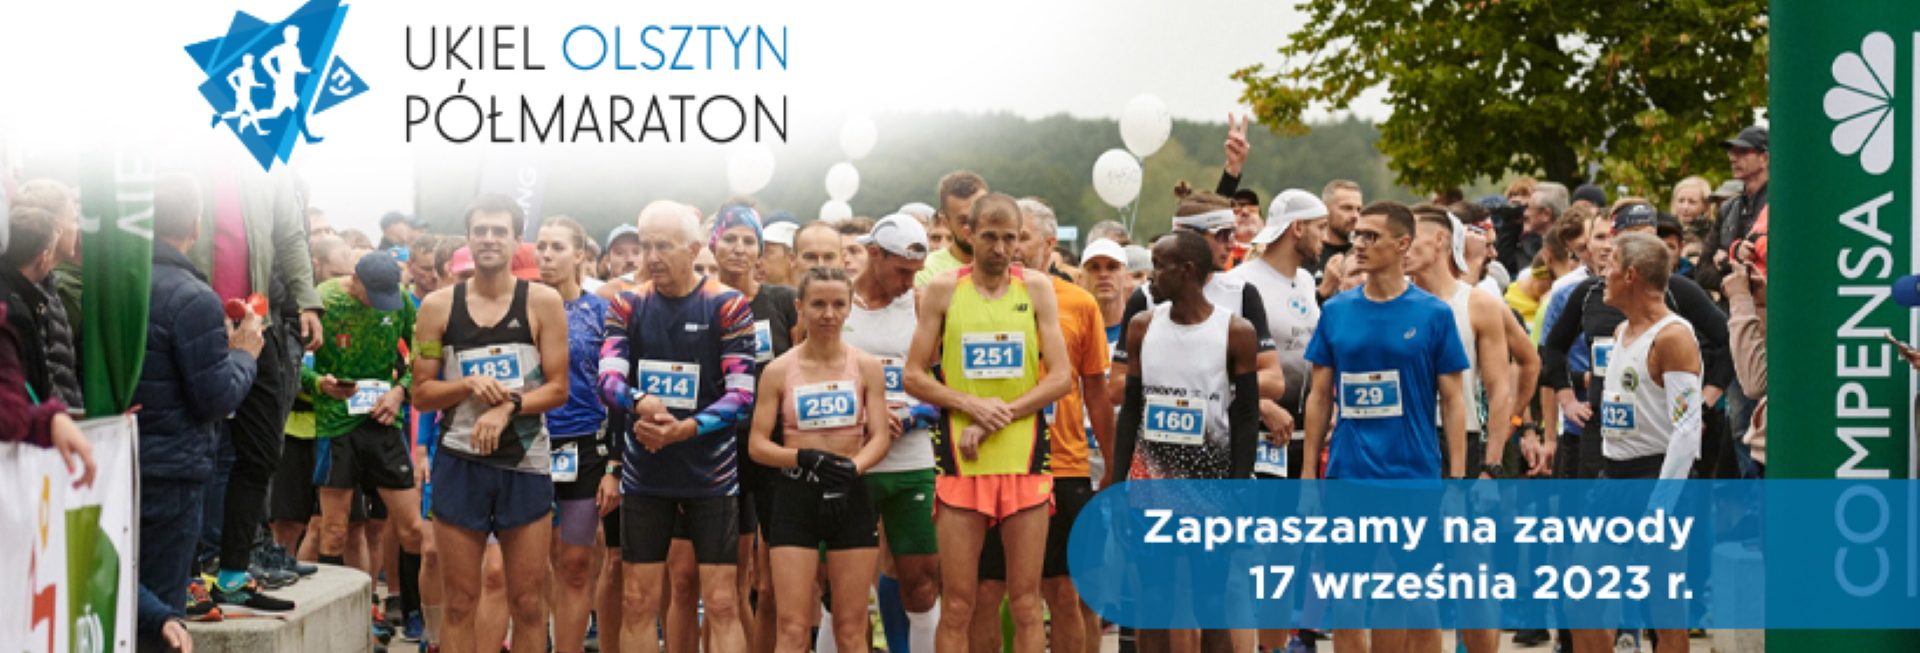 Plakat zapraszający w niedzielę 17 września 2023 r. do Olsztyna na 7. edycję Biegu Ukiel Olsztyn Półmaraton Olsztyn 2023.